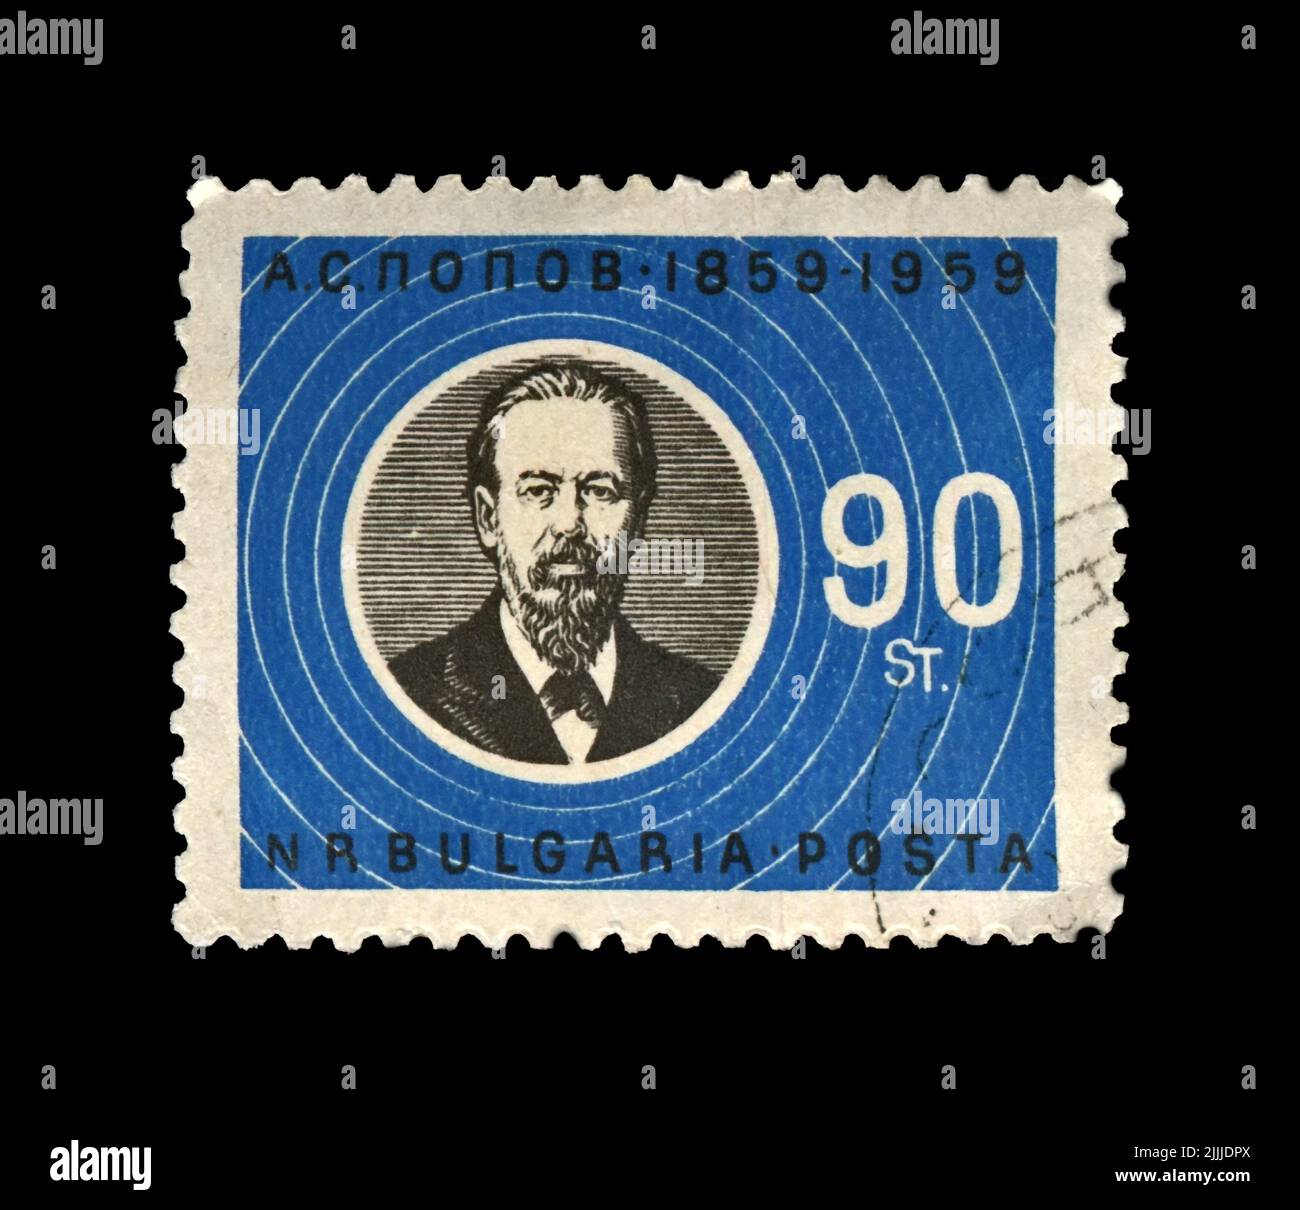 Alexandr Popov (1859-1905), berühmter russischer Radiopionier, Innovator der Funkübertragung, abgesagte Briefmarke, gedruckt in Bulgarien Stockfoto